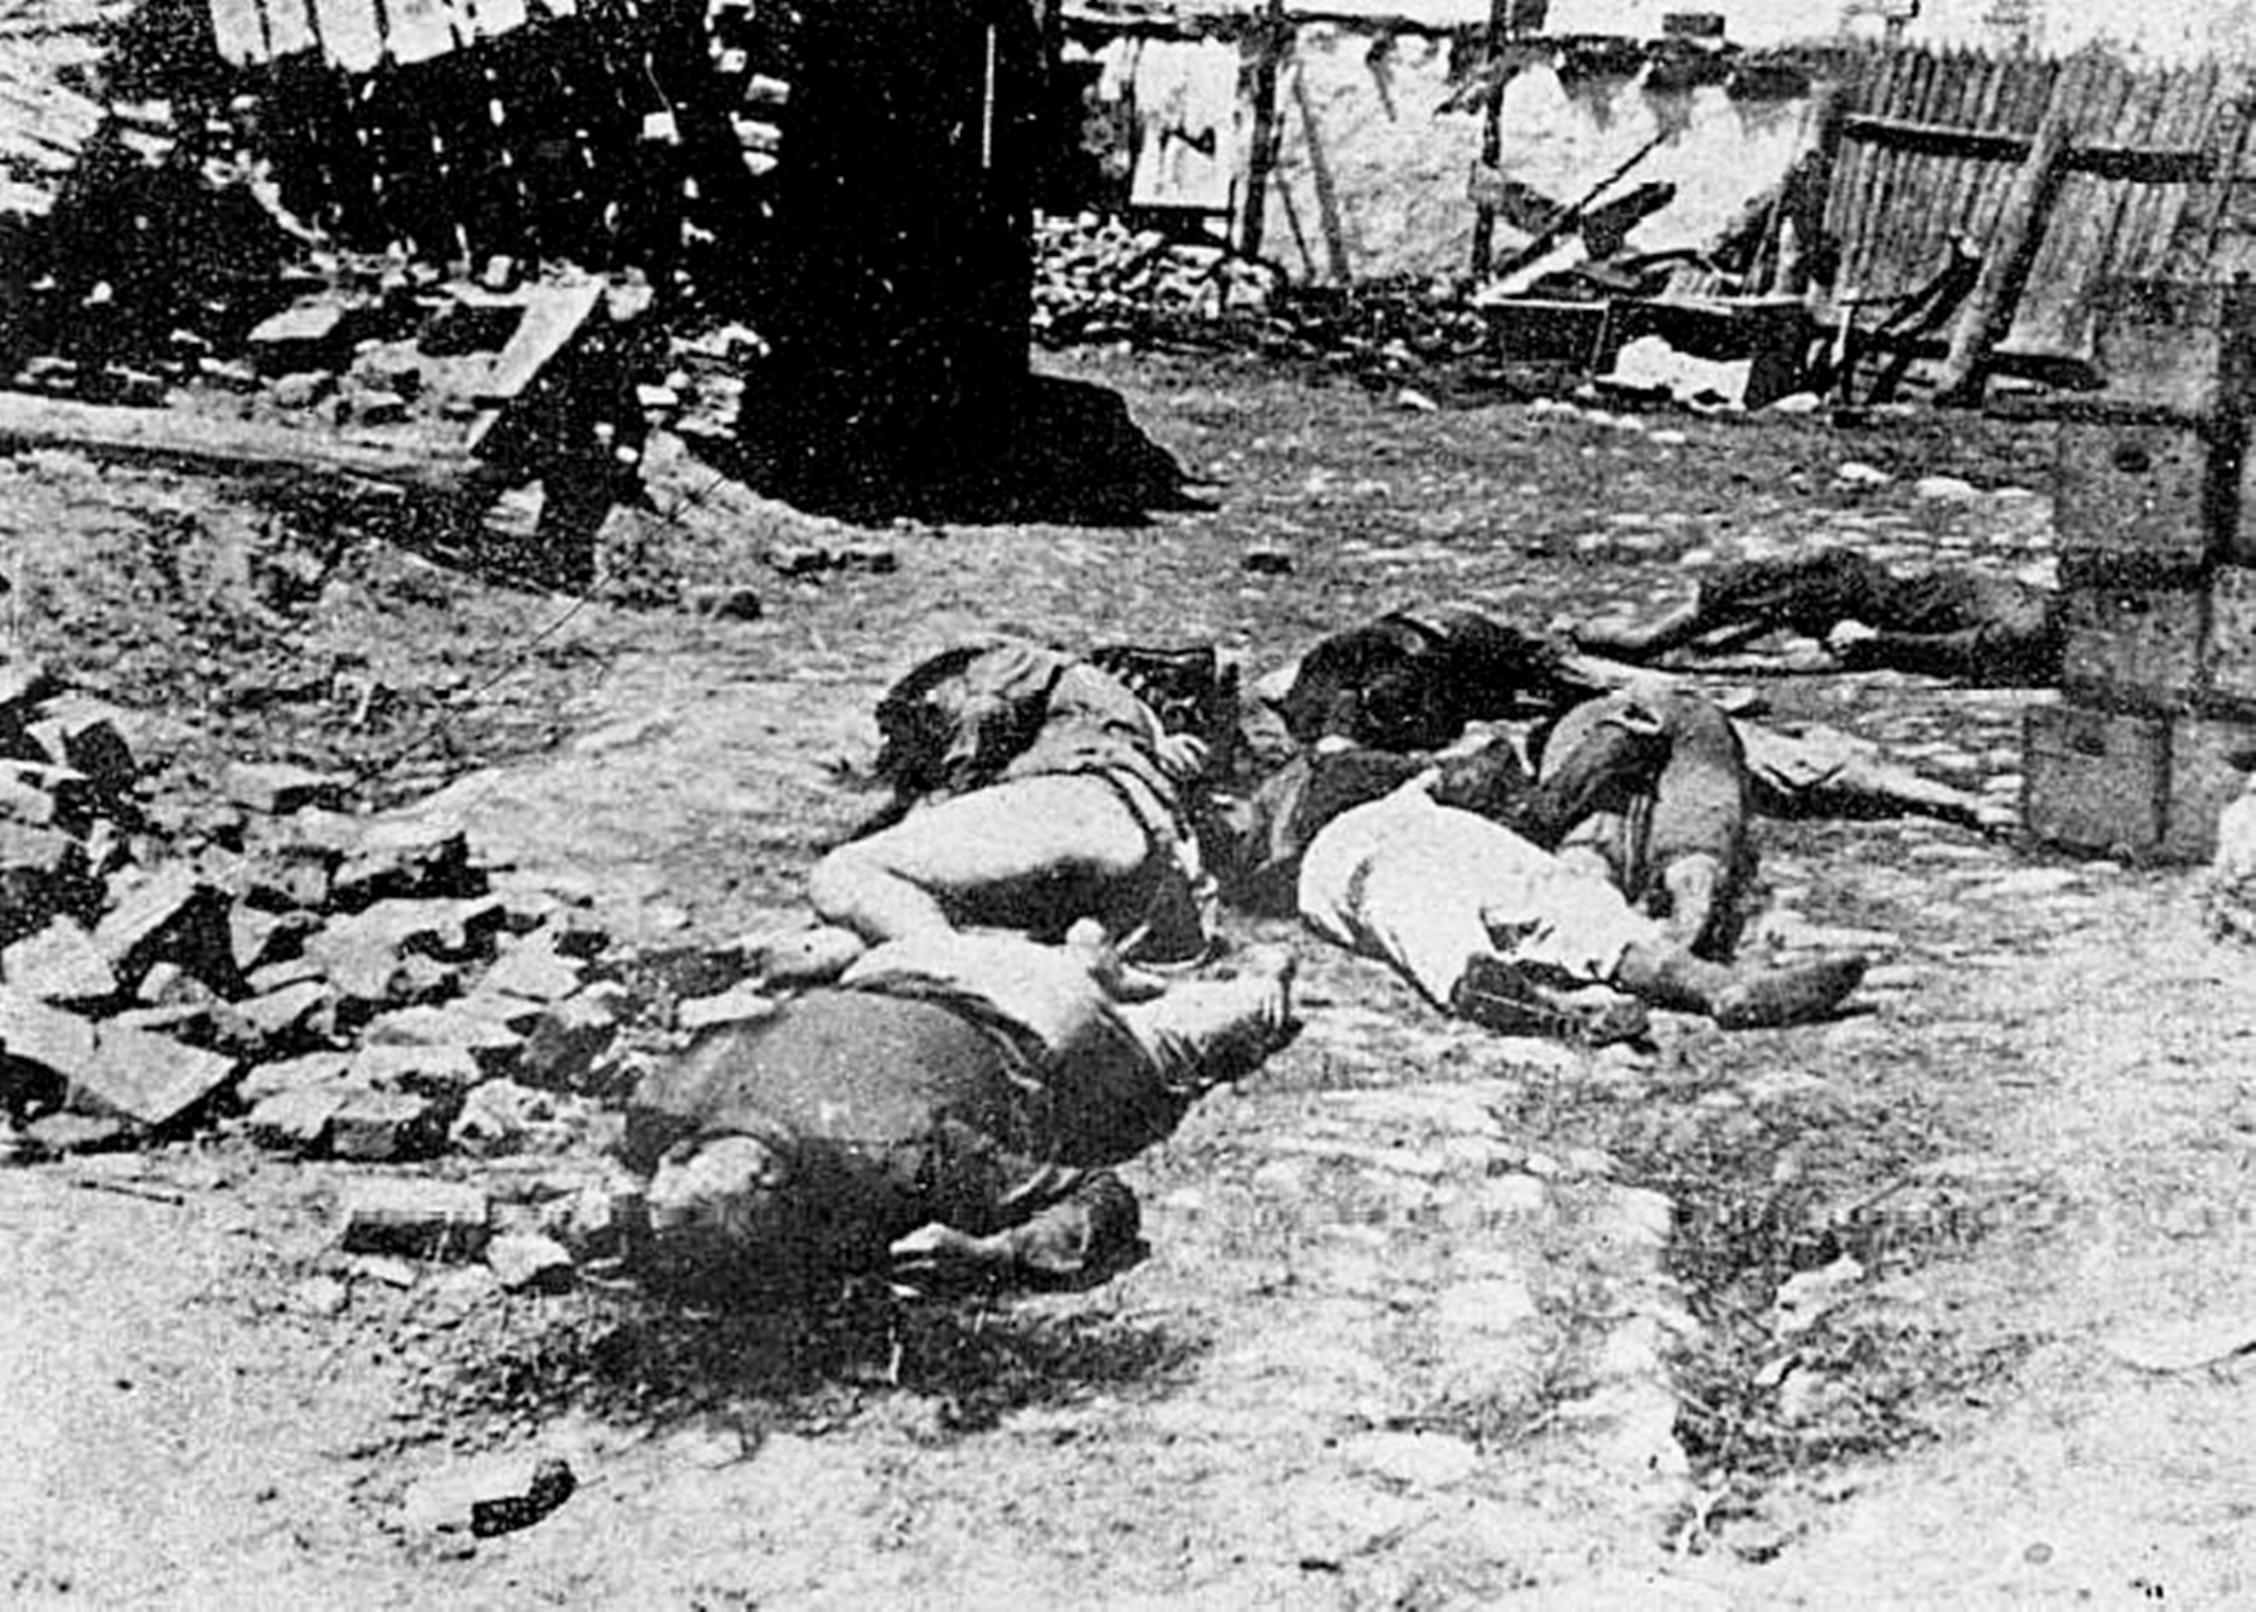 גופות יהודים שנרצחו על ידי פאשיסטים רומנים בדרך לטרנסניסטריה,רומניה, אוקטובר 1941 (ויקיפדיה)